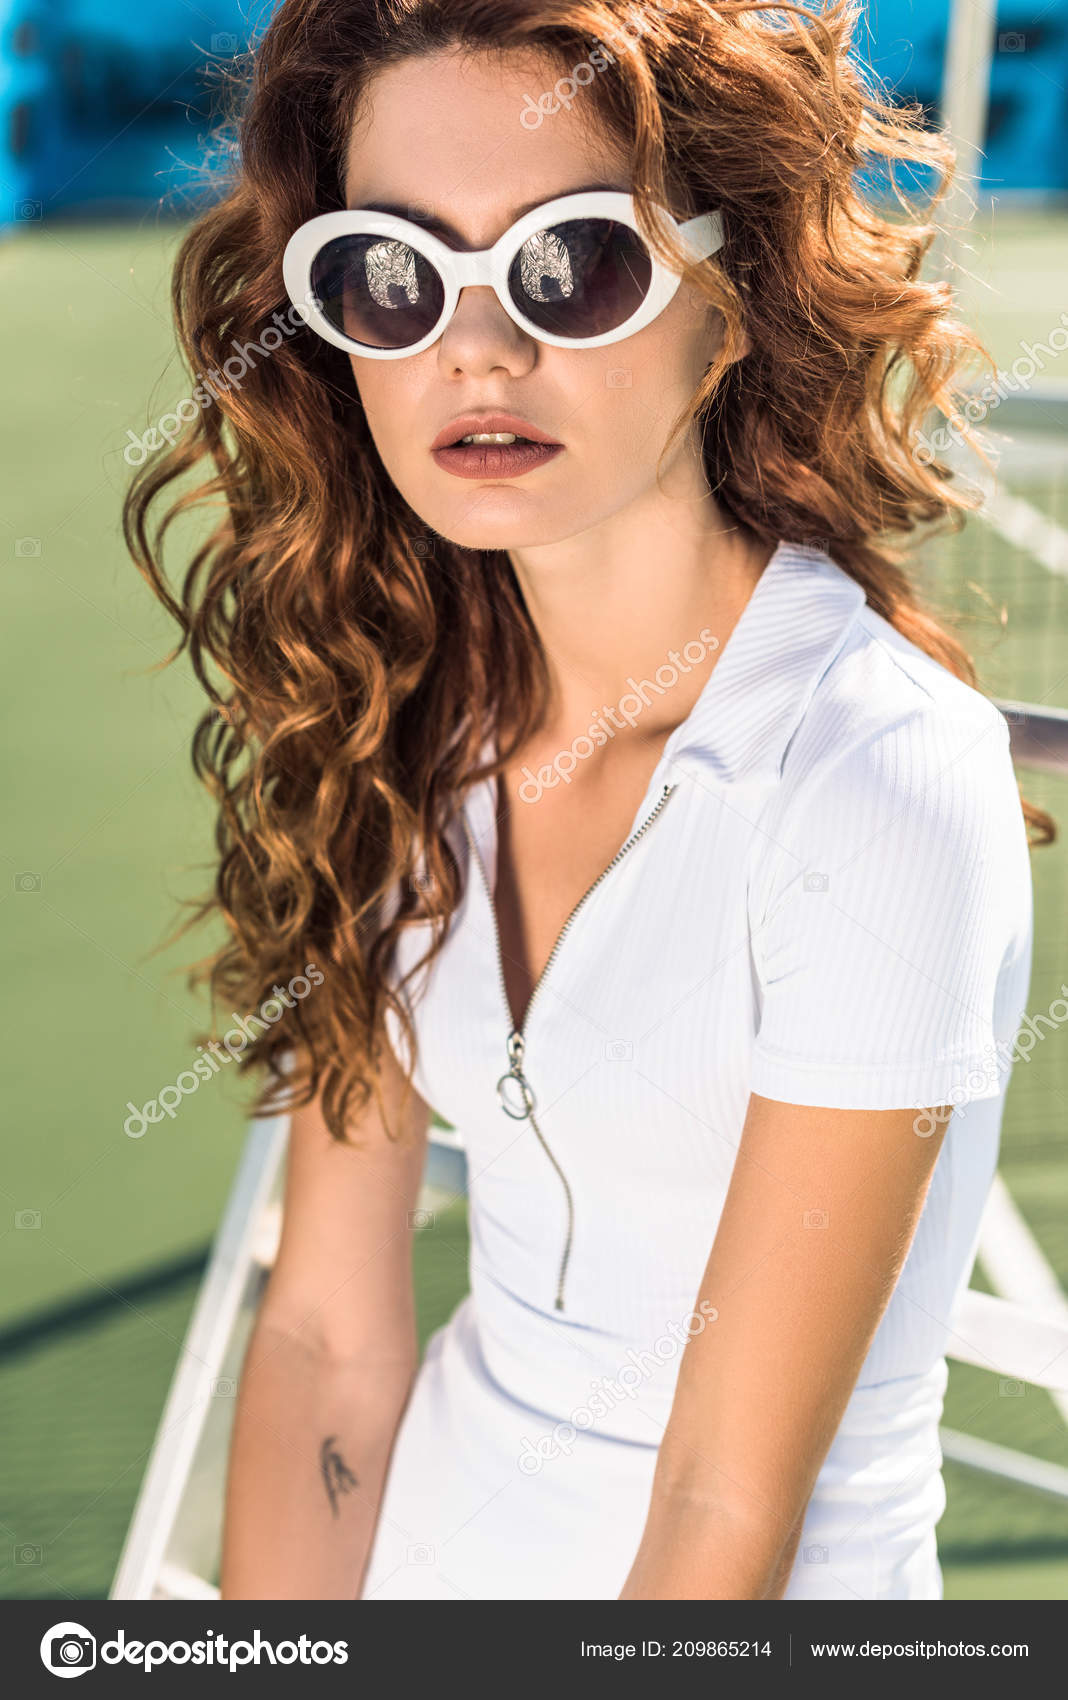 Retrato Mujer Hermosa Ropa Deportiva Blanca Gafas Sol Pista Tenis - Foto stock gratis © Y-Boychenko #209865214